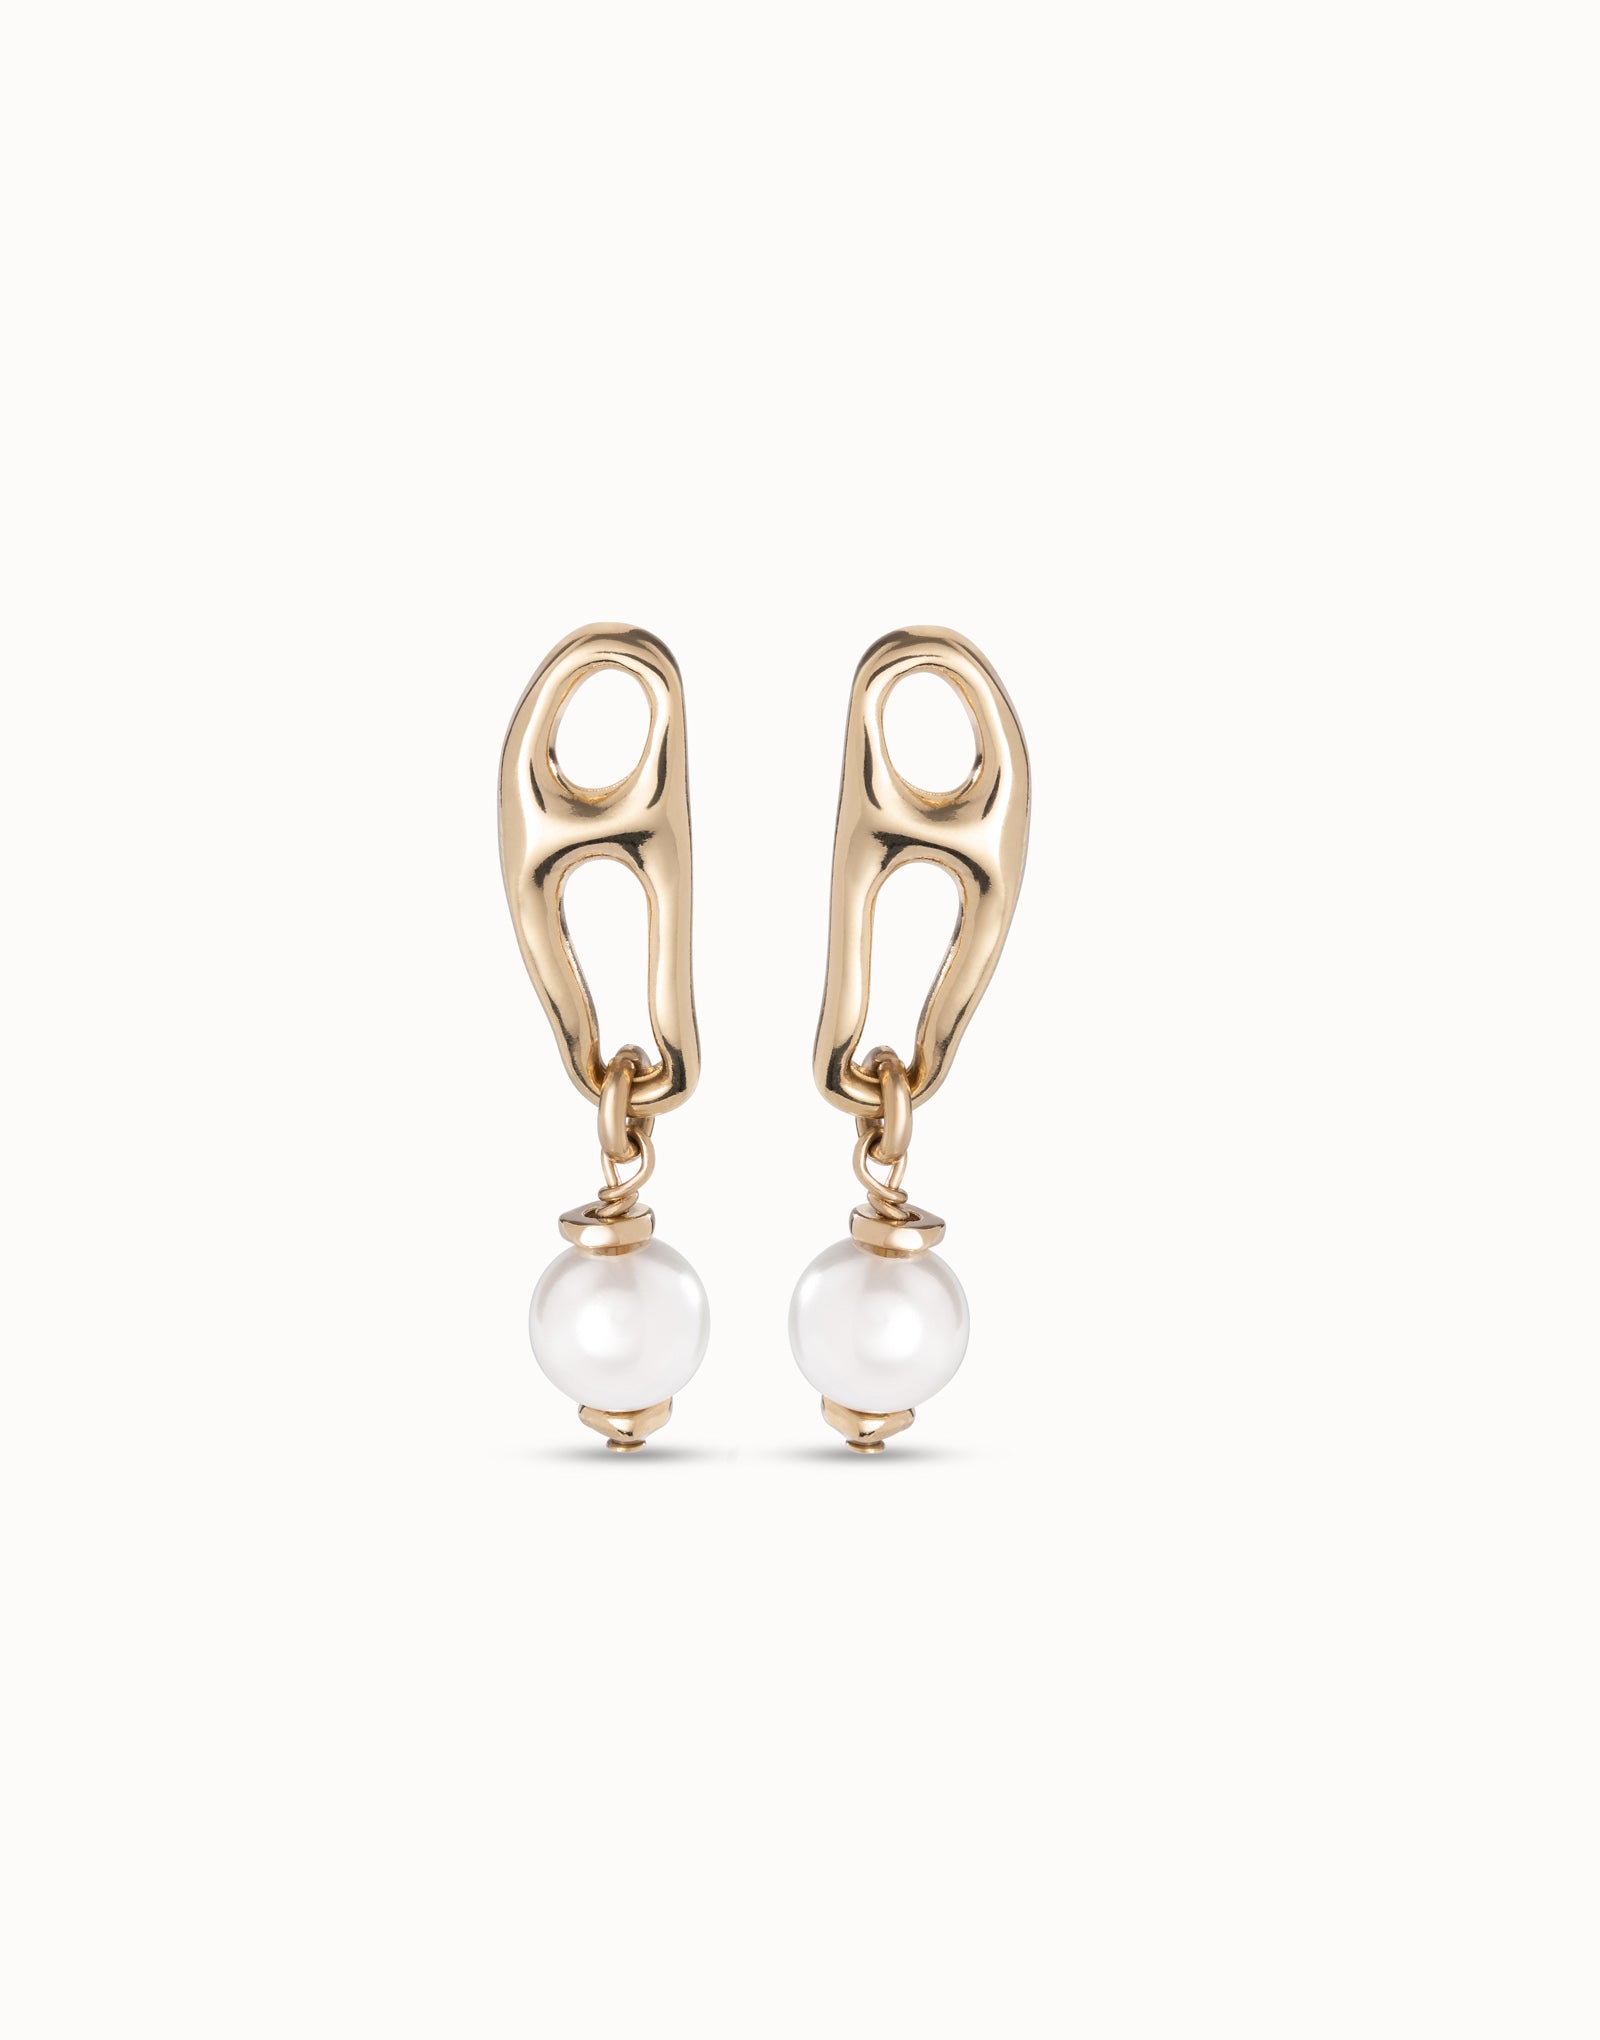 Pearl & Match Earrings - Gold - Uno de 50